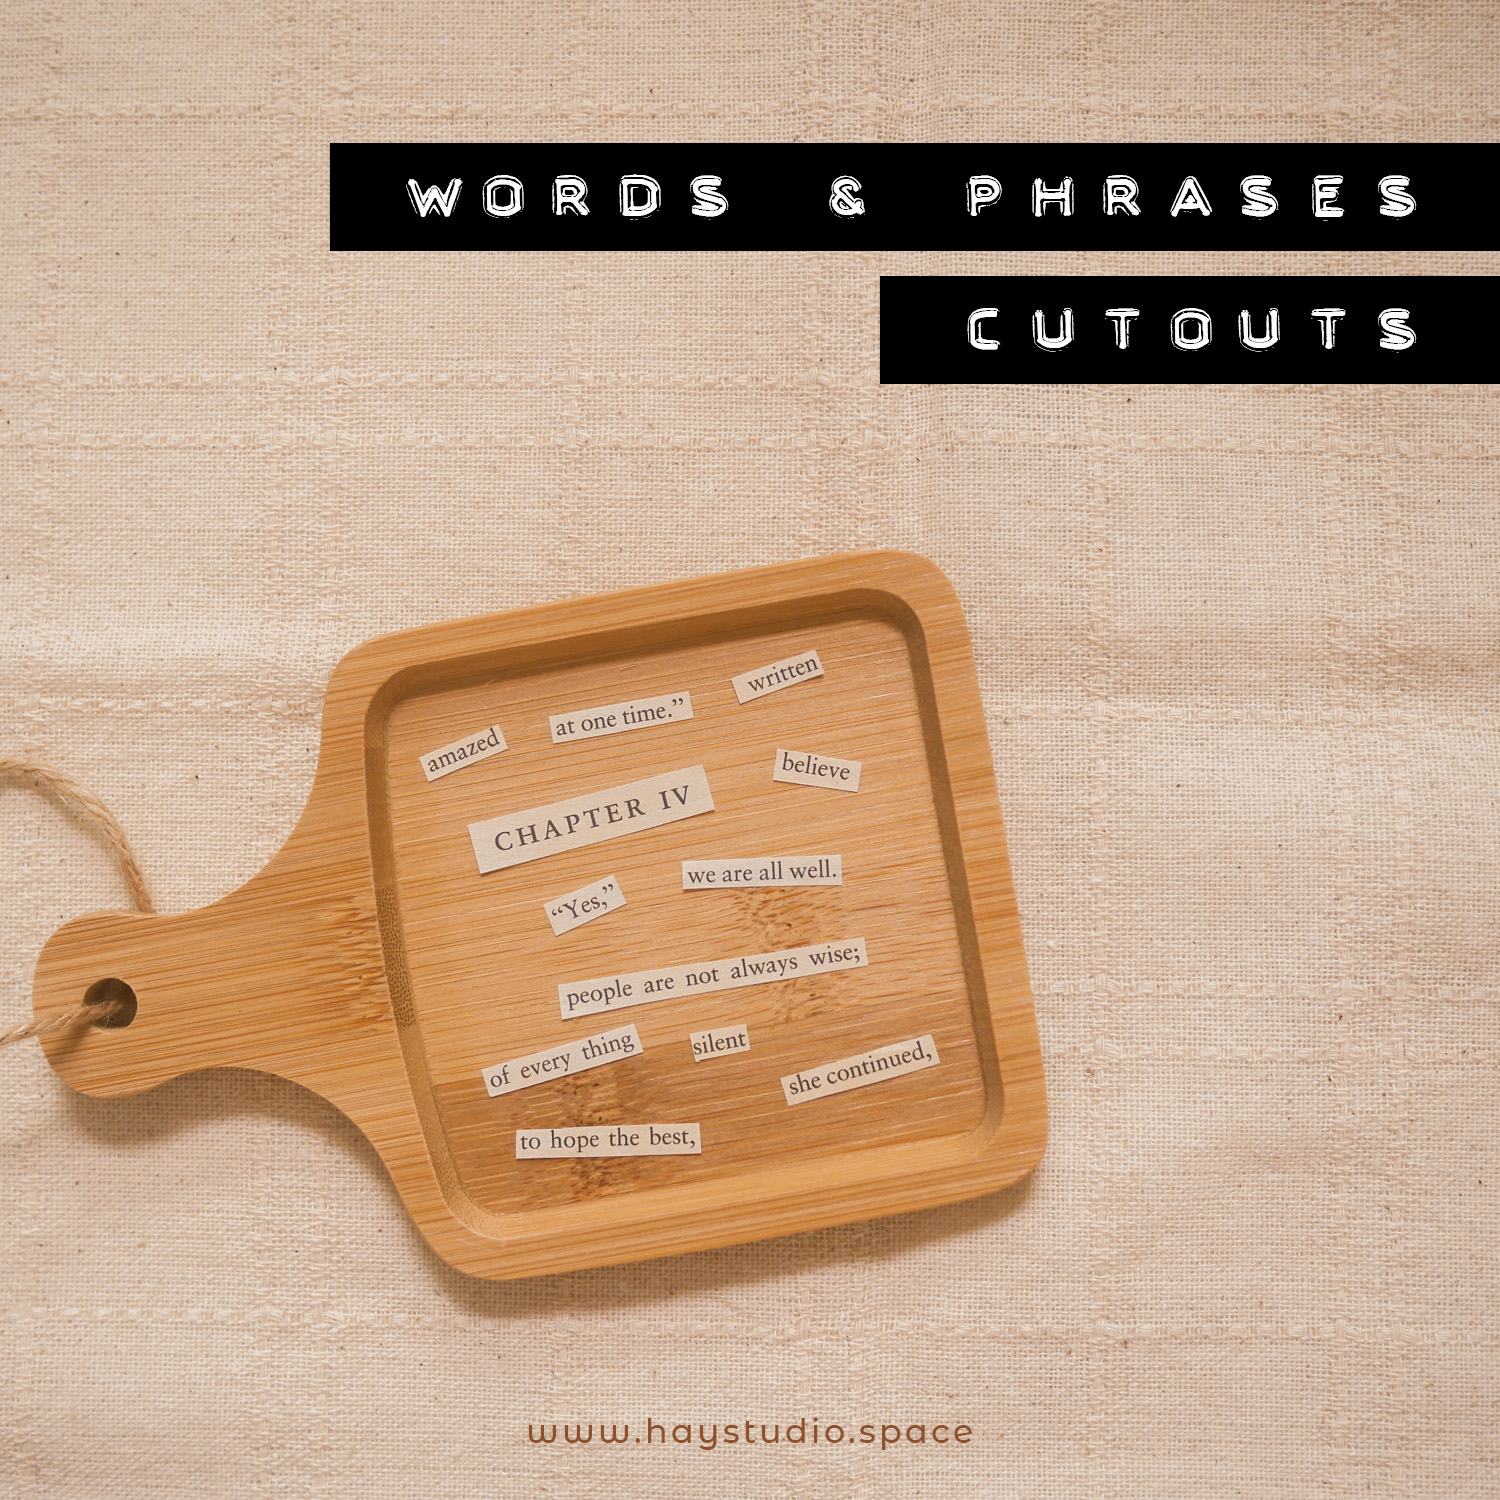 DIY Ephemera Idea #1 - Words & Phrases Cutouts